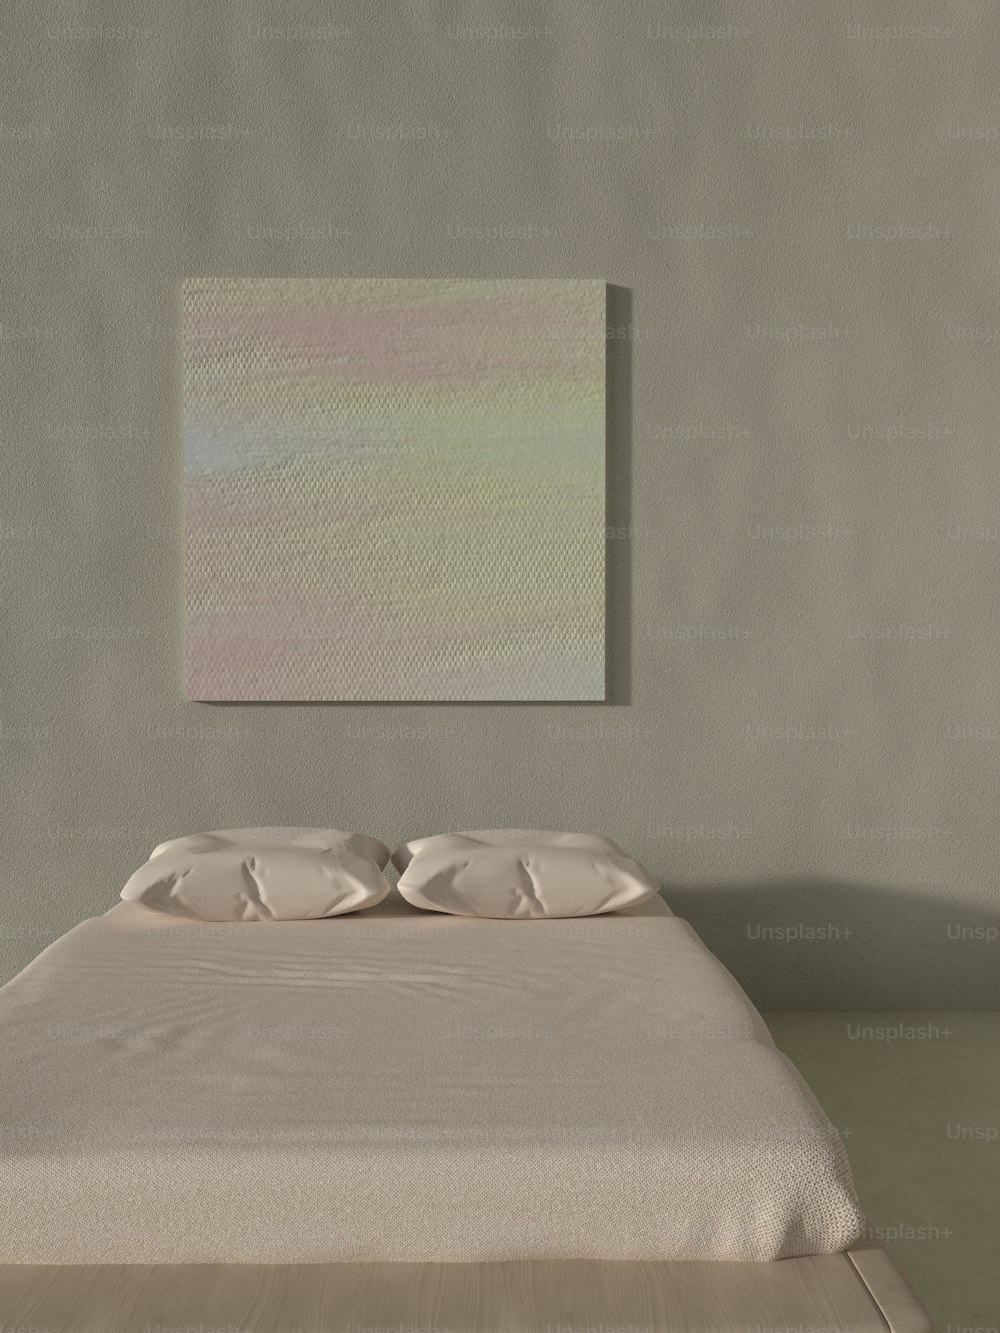 壁に絵が描かれた部屋のベッド